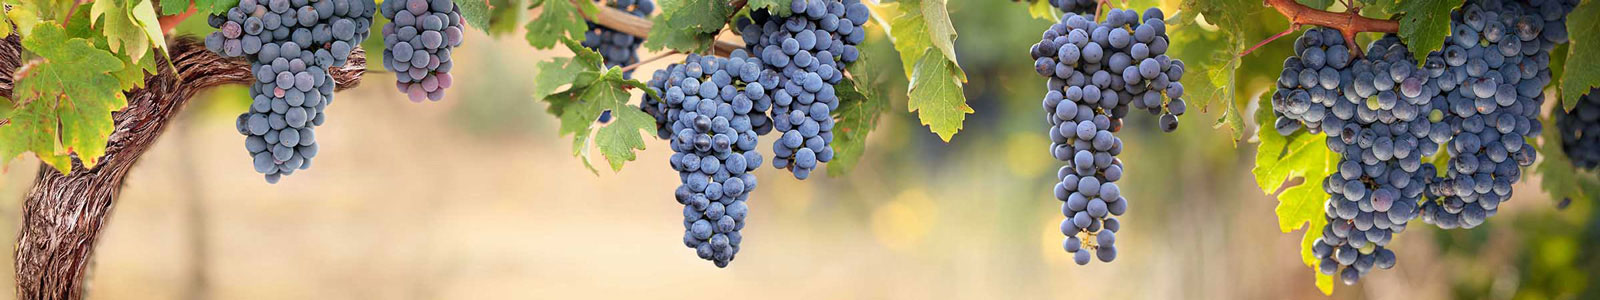 №3696 - Синий виноград в теплом дневном свете